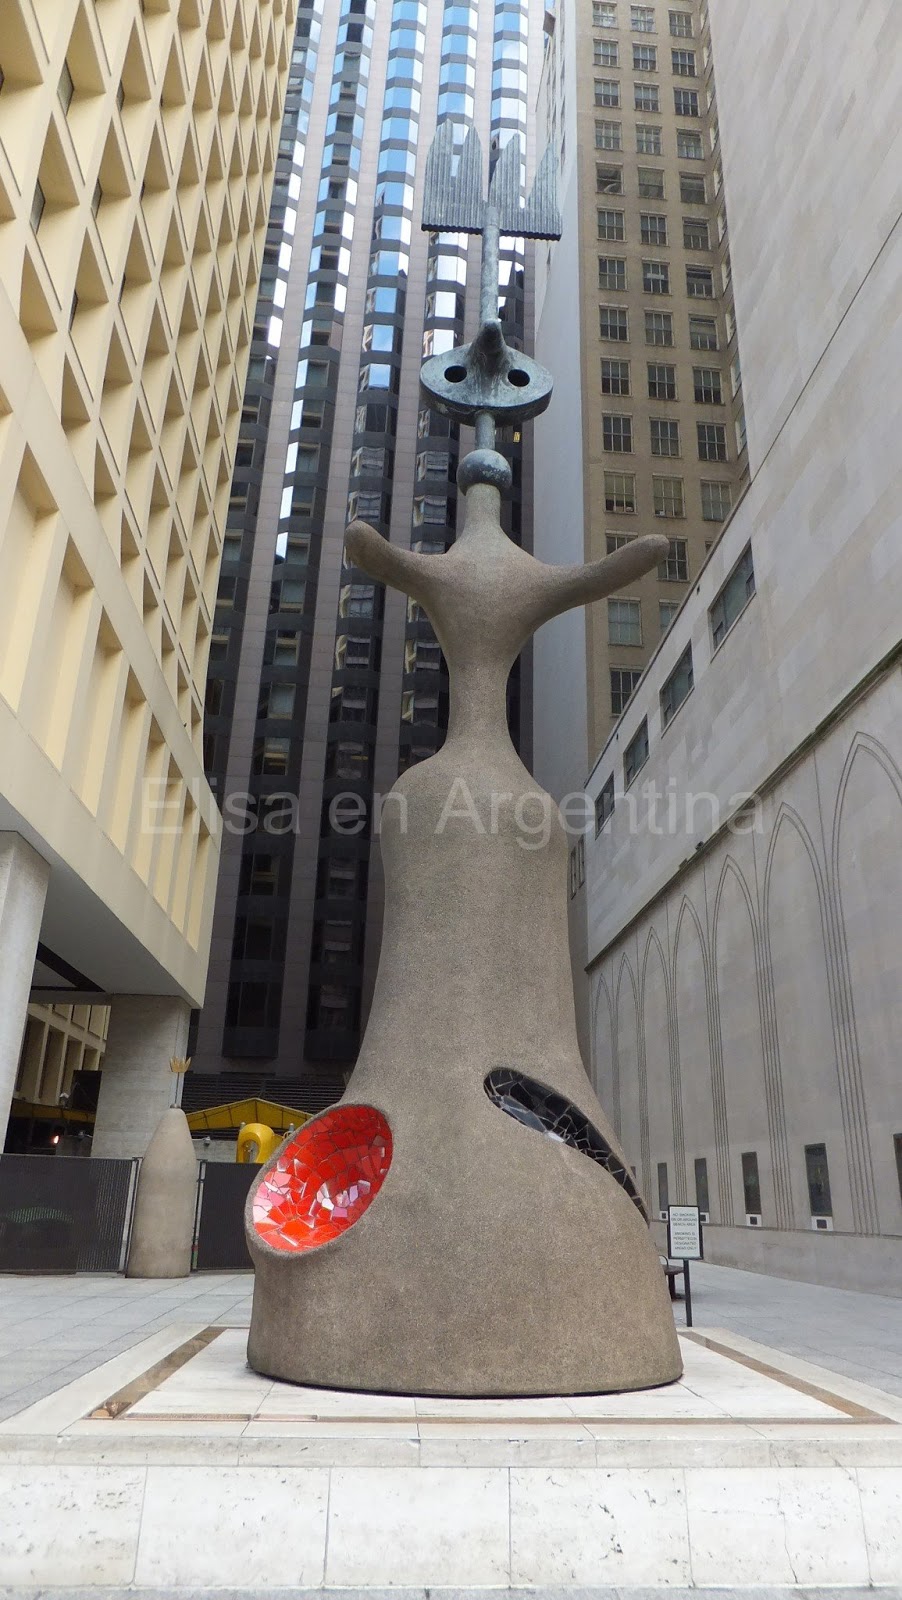 Joan Miró, The Loop, Chicago, Elisa N, Blog de Viajes, Lifestyle, Travel